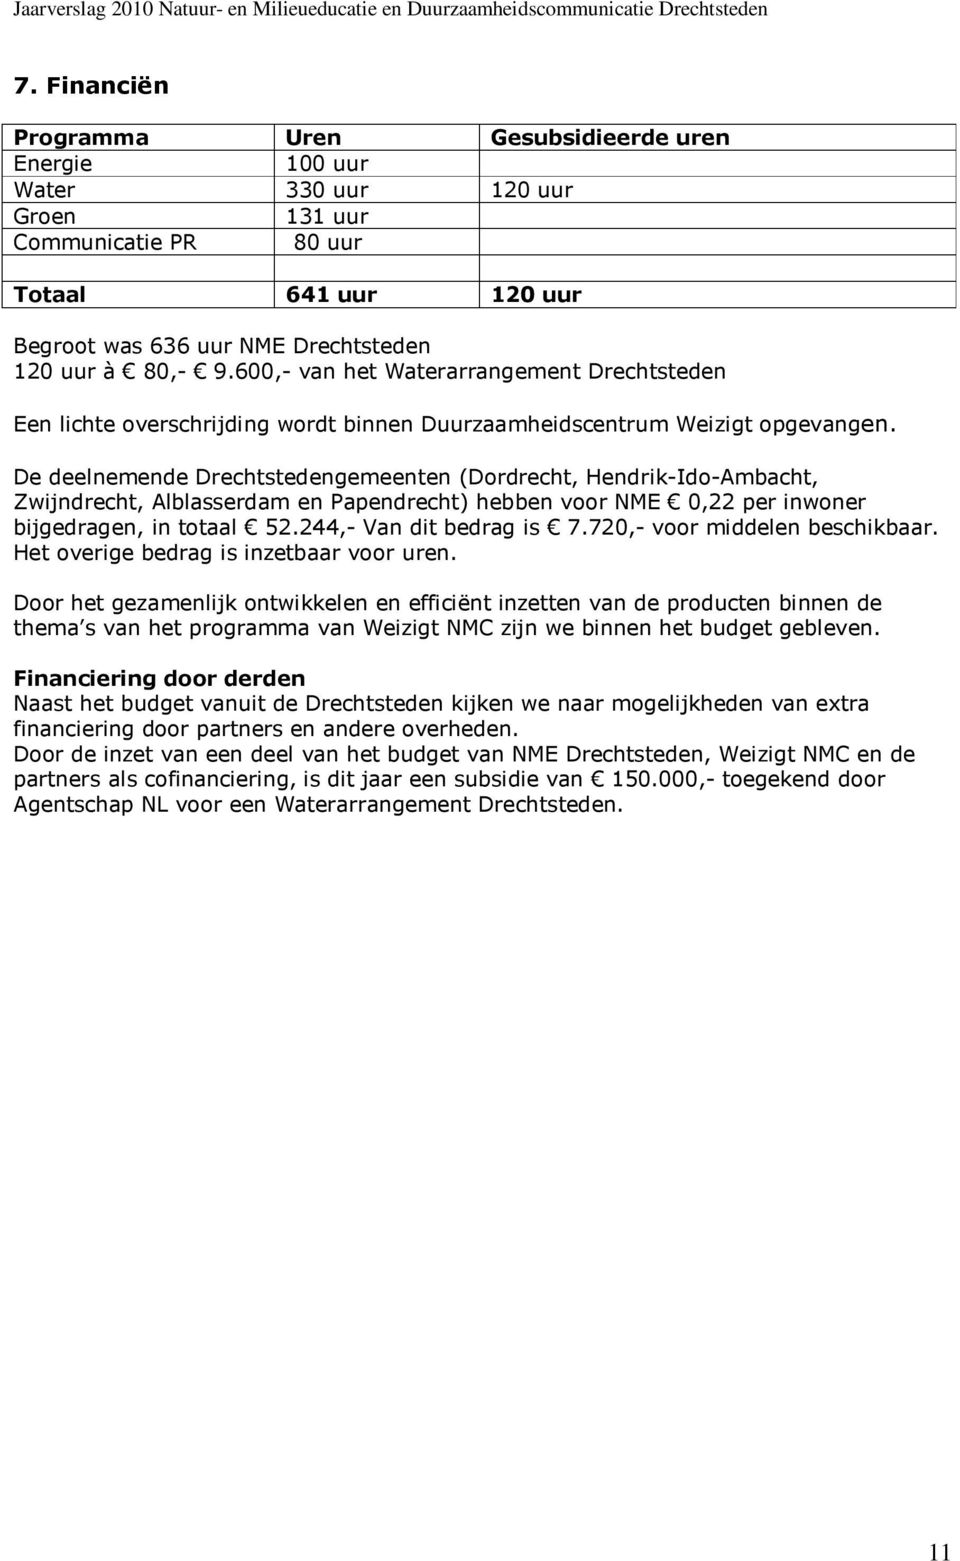 De deelnemende Drechtstedengemeenten (Dordrecht, Hendrik-Ido-Ambacht, Zwijndrecht, Alblasserdam en Papendrecht) hebben voor NME 0,22 per inwoner bijgedragen, in totaal 52.244,- Van dit bedrag is 7.